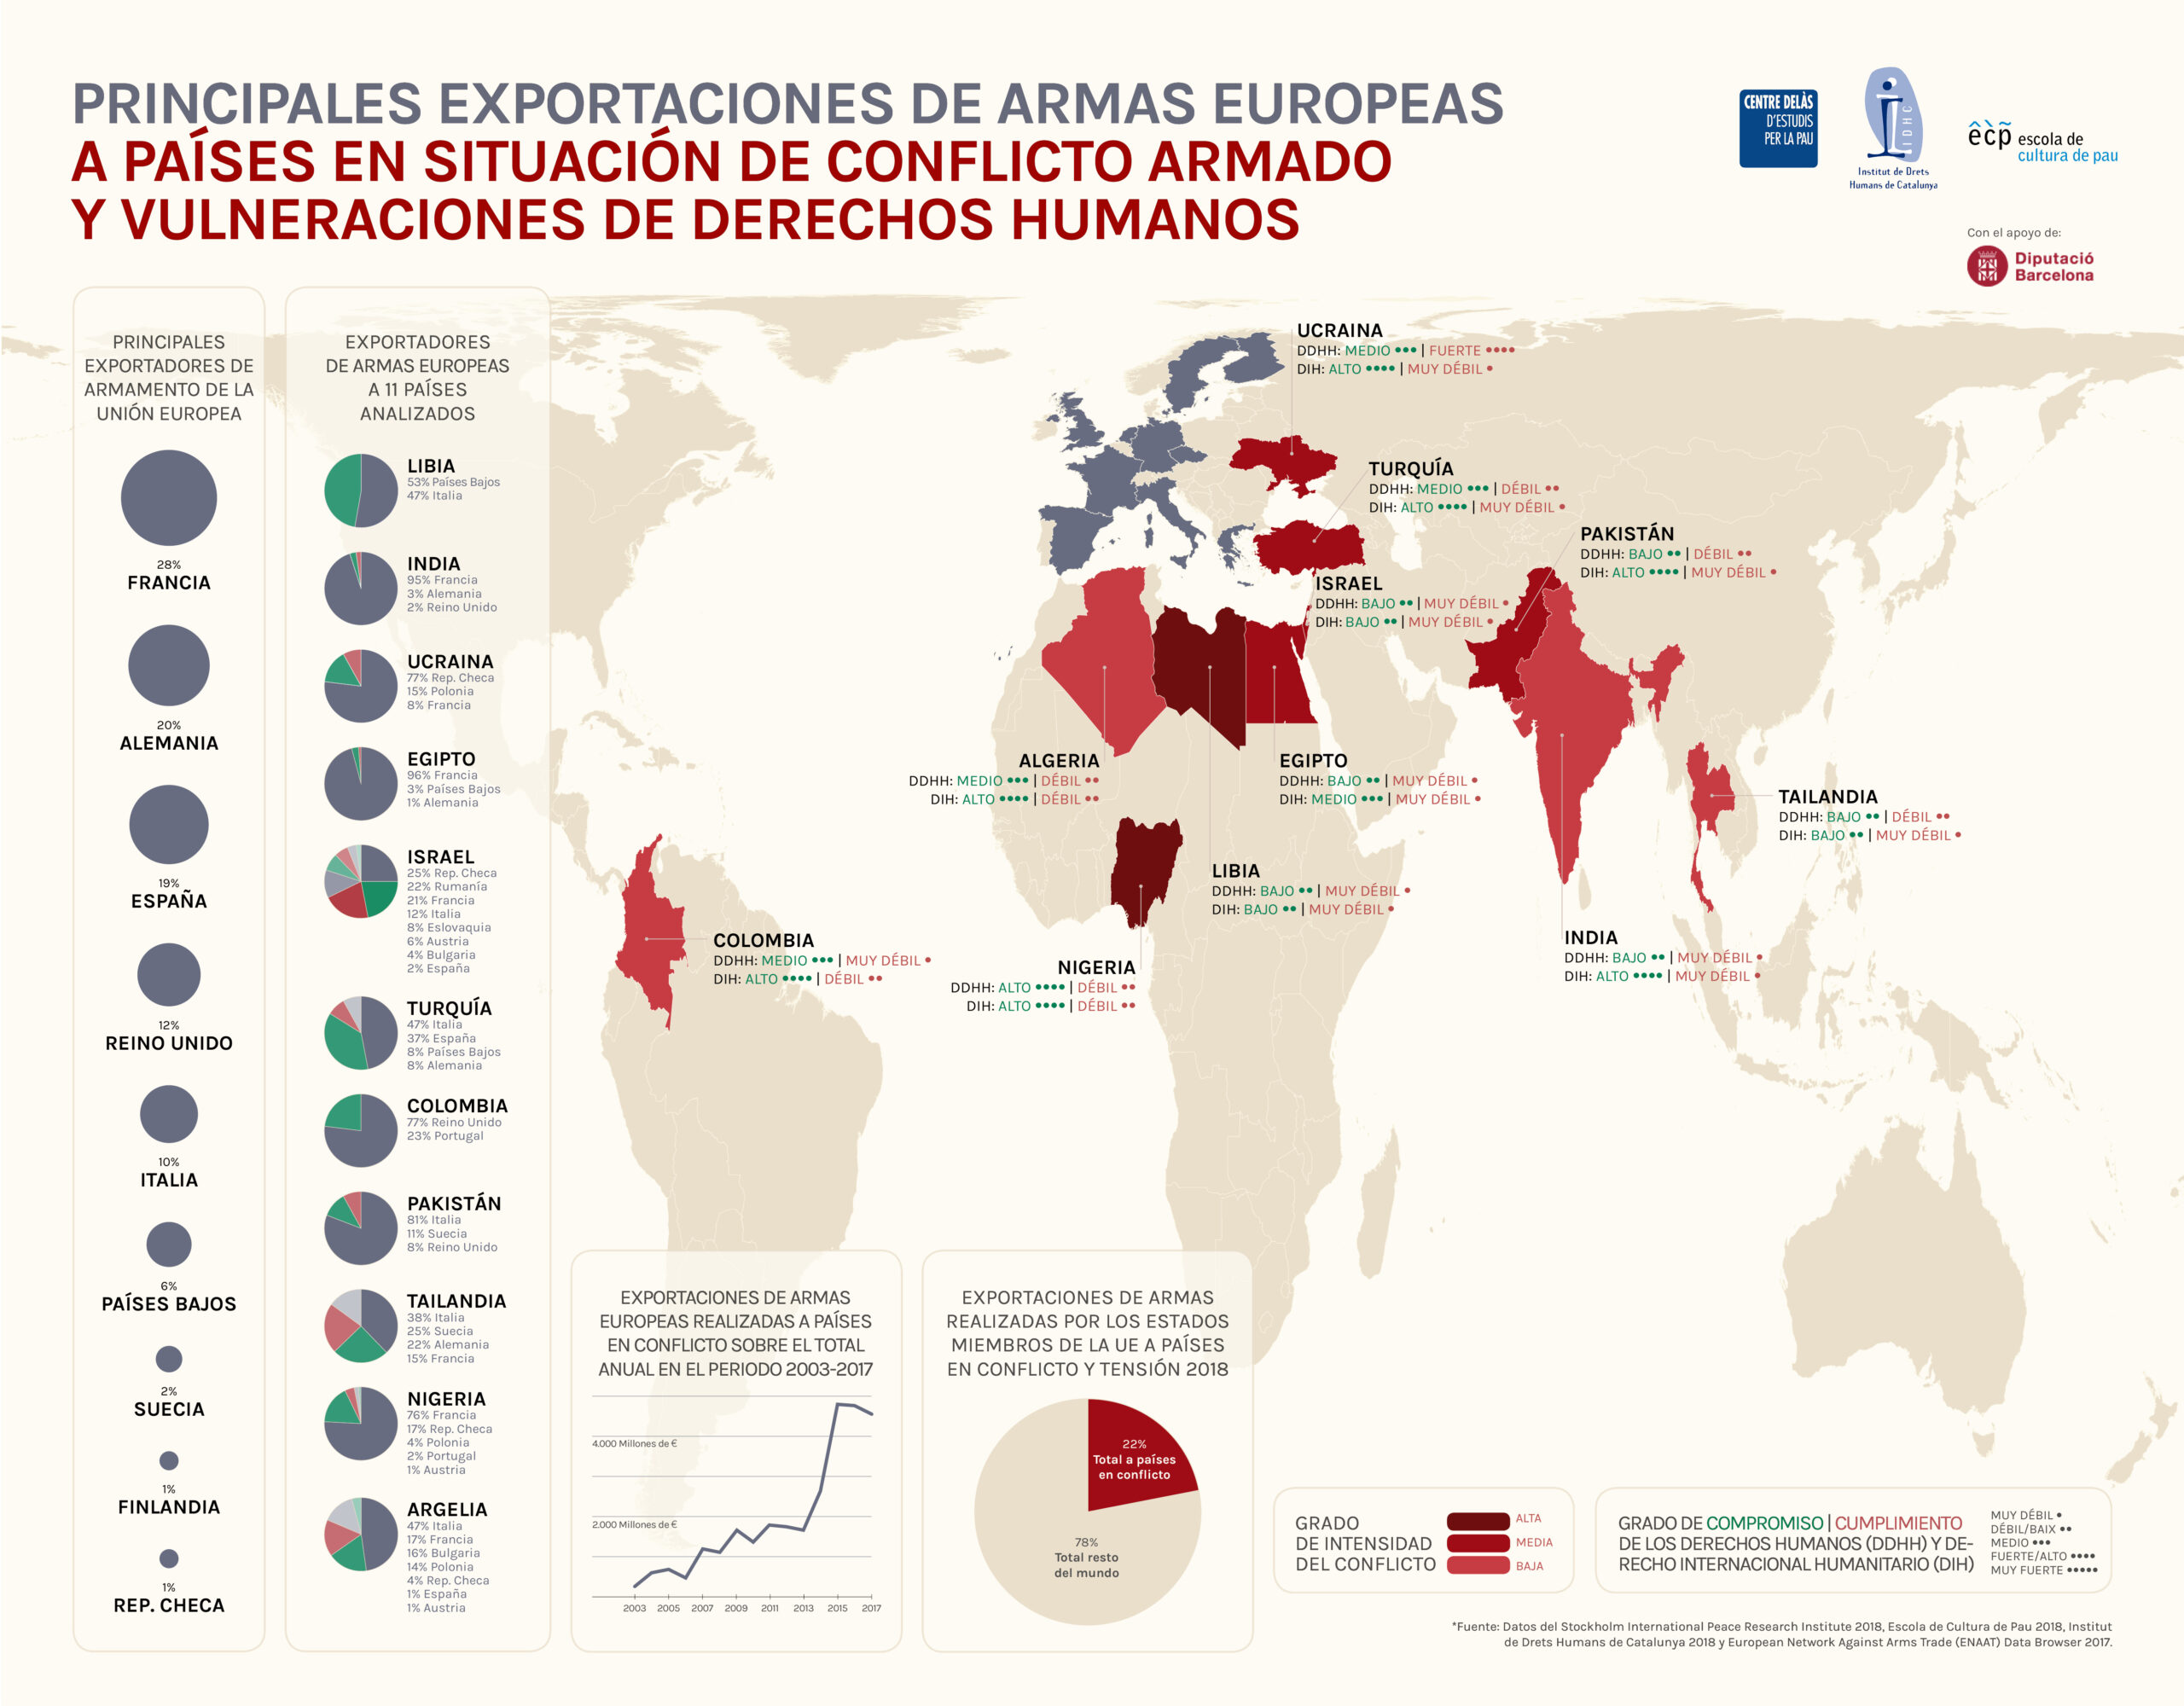 Comercio de armas, conflictos y derechos humanos. Análisis de las exportaciones de armas europeas a países en situación de conflicto armado y vulneraciones de derechos humanos